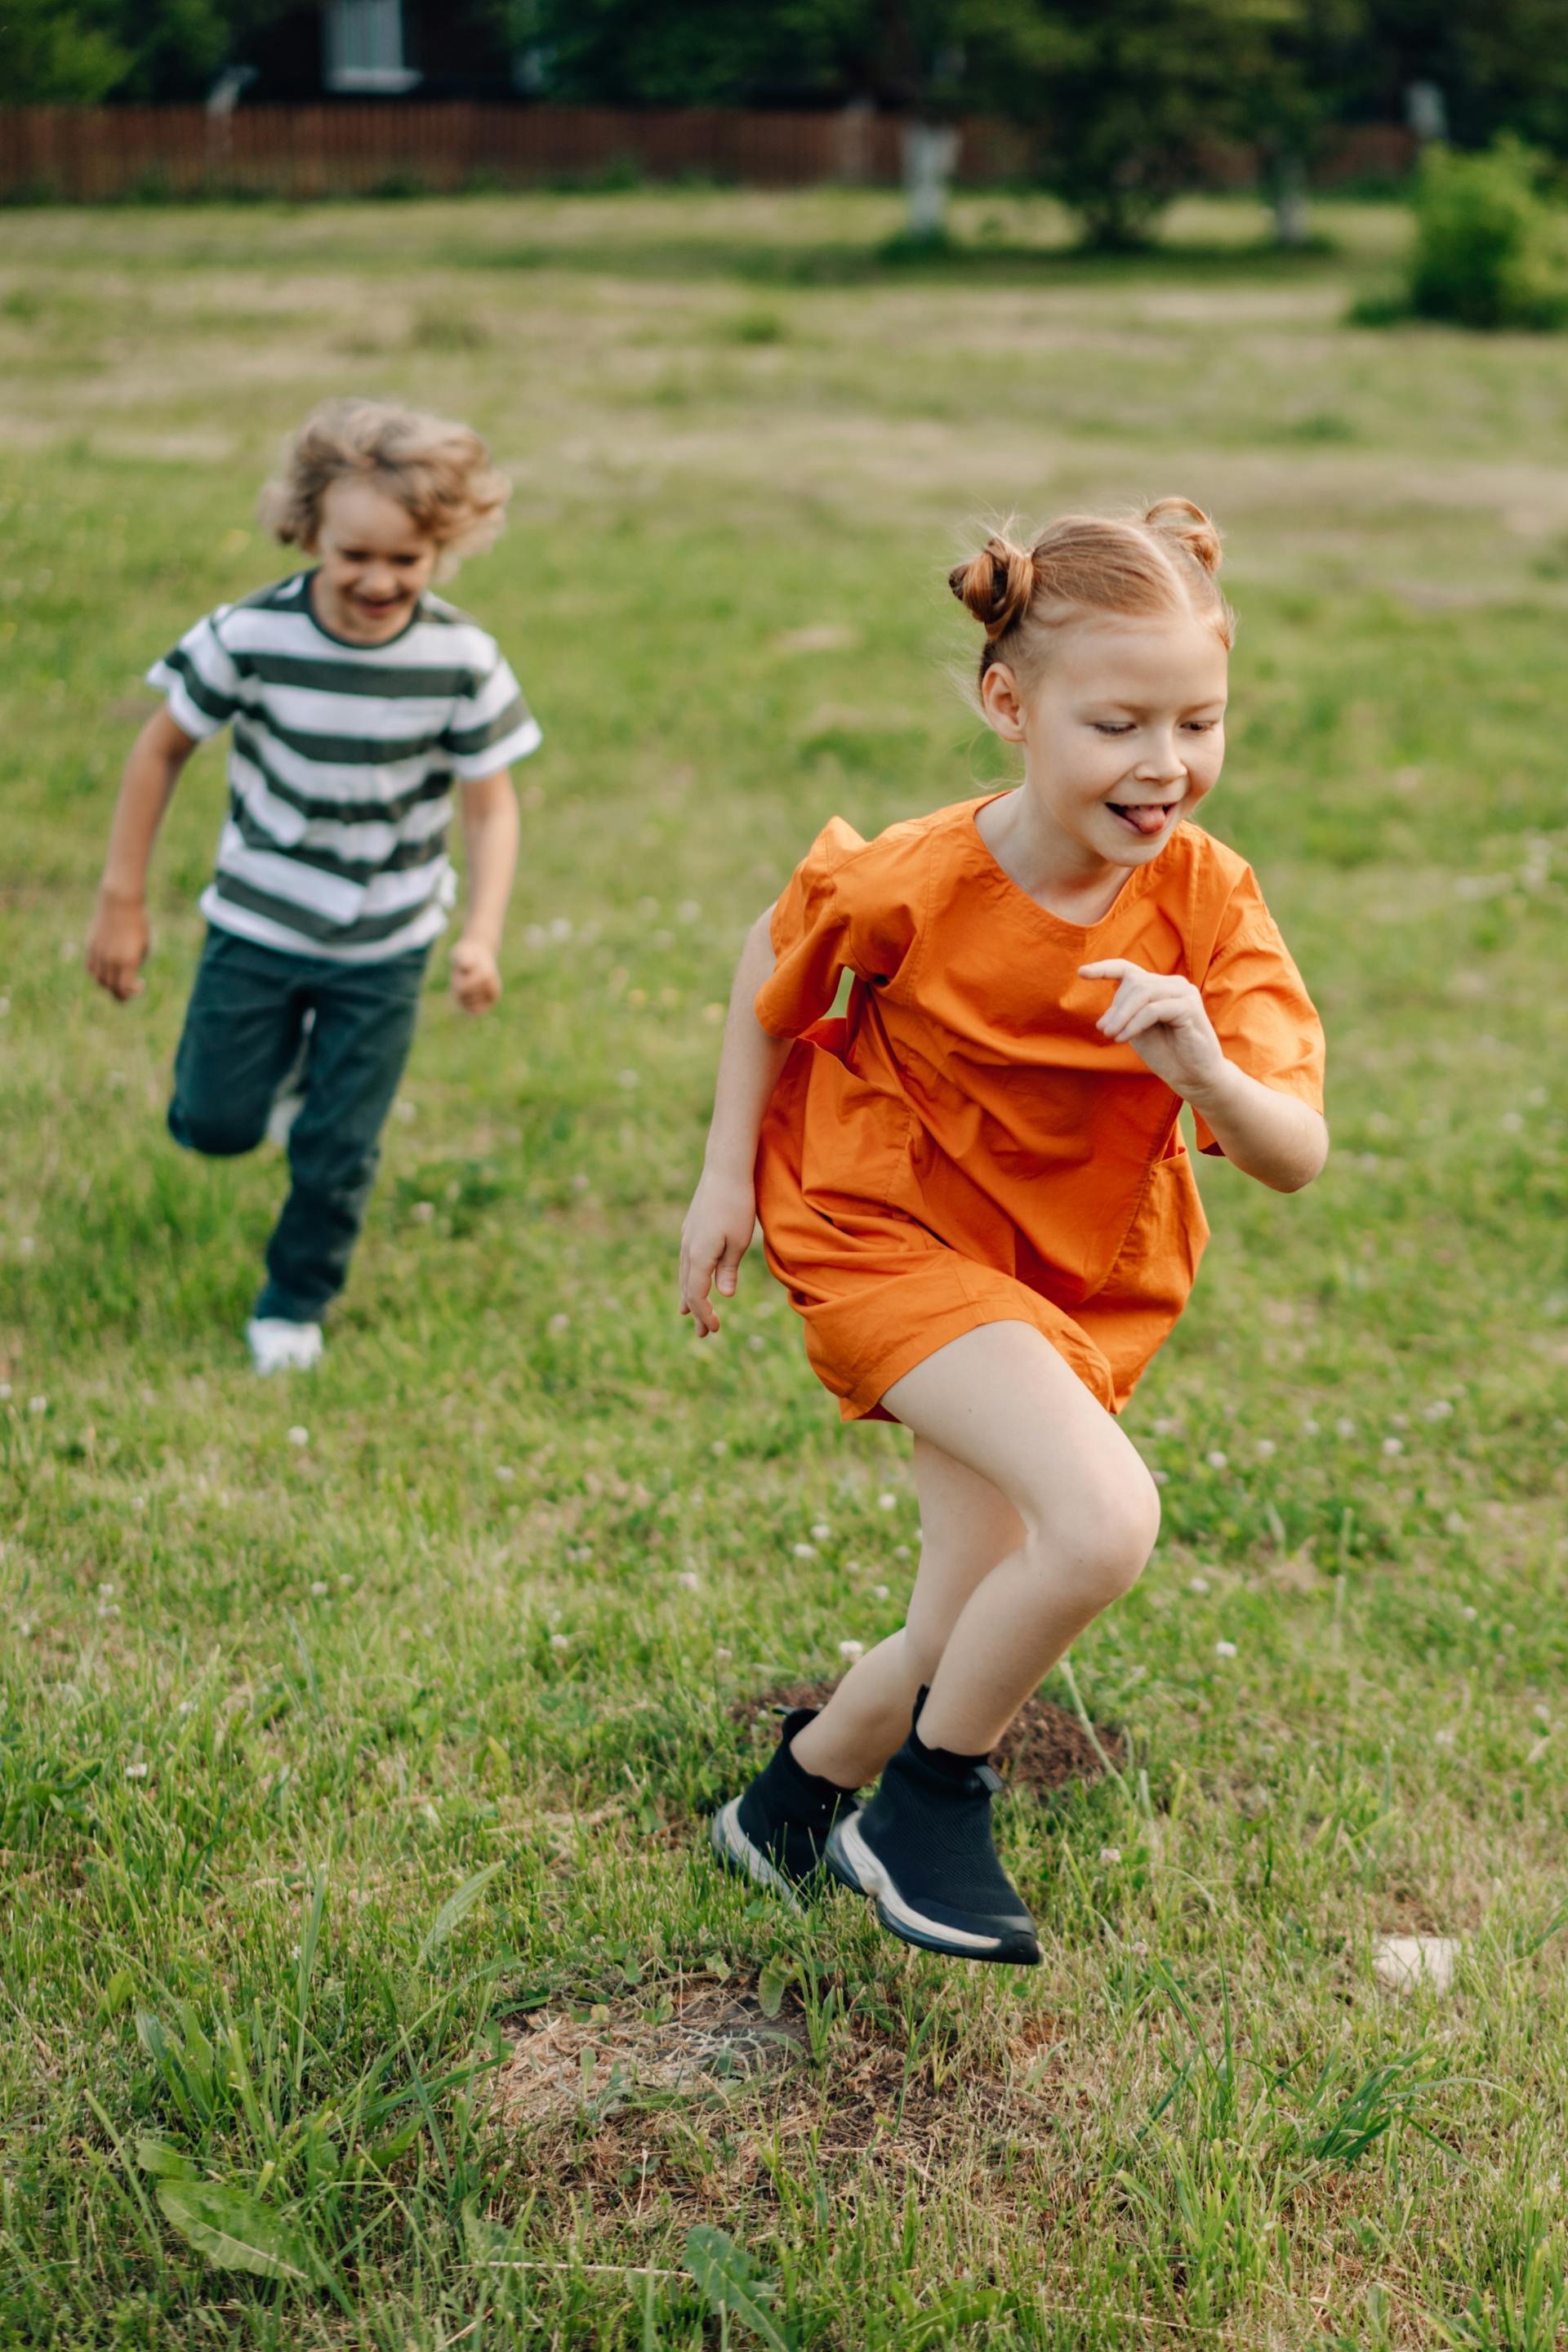 Junge und Mädchen laufen auf Gras | Quelle: Pexels